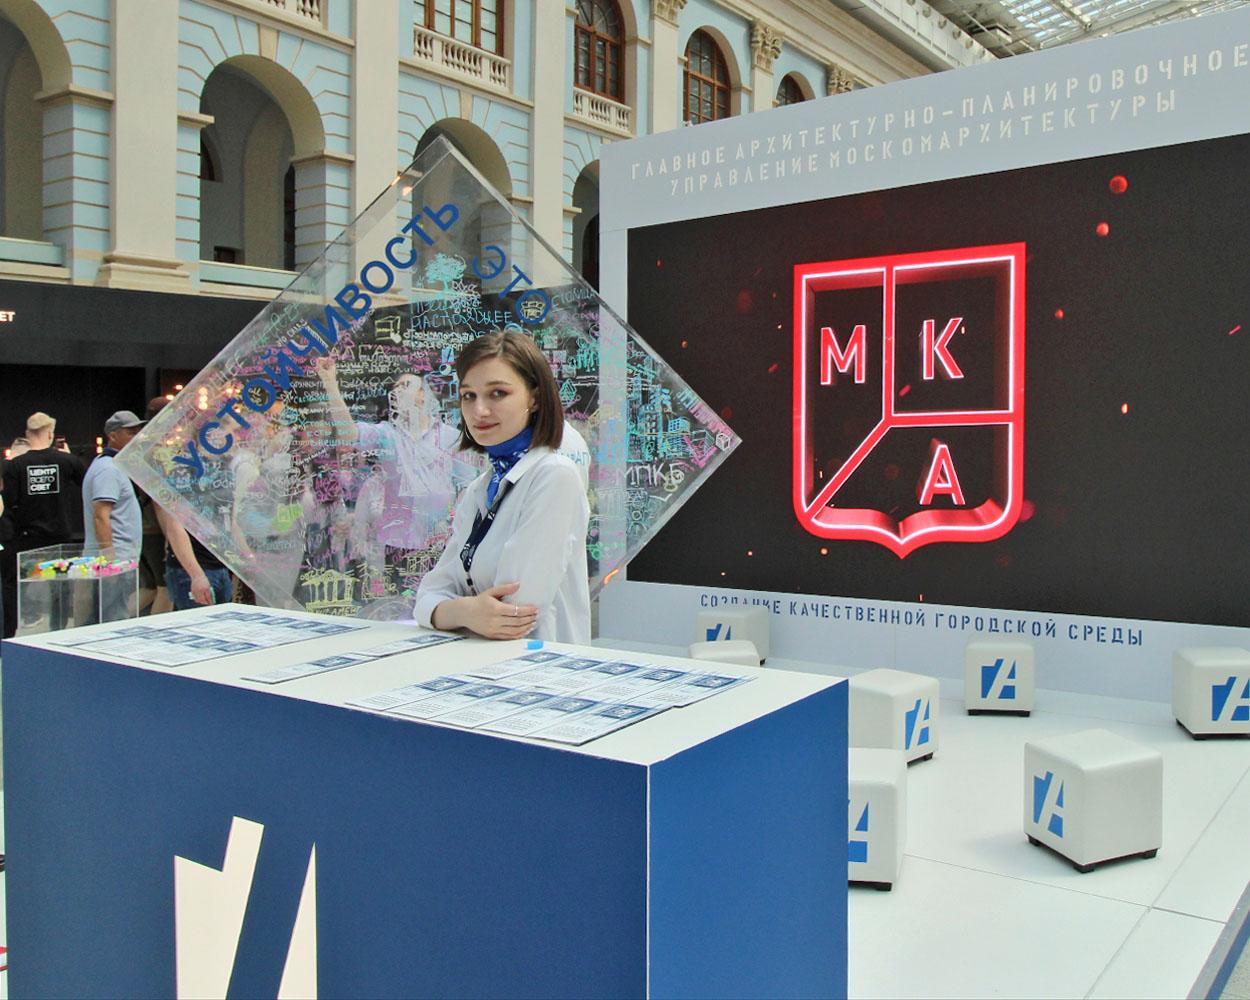 XXVII Международная выставка архитектуры и дизайна АРХМОСКВА-2022